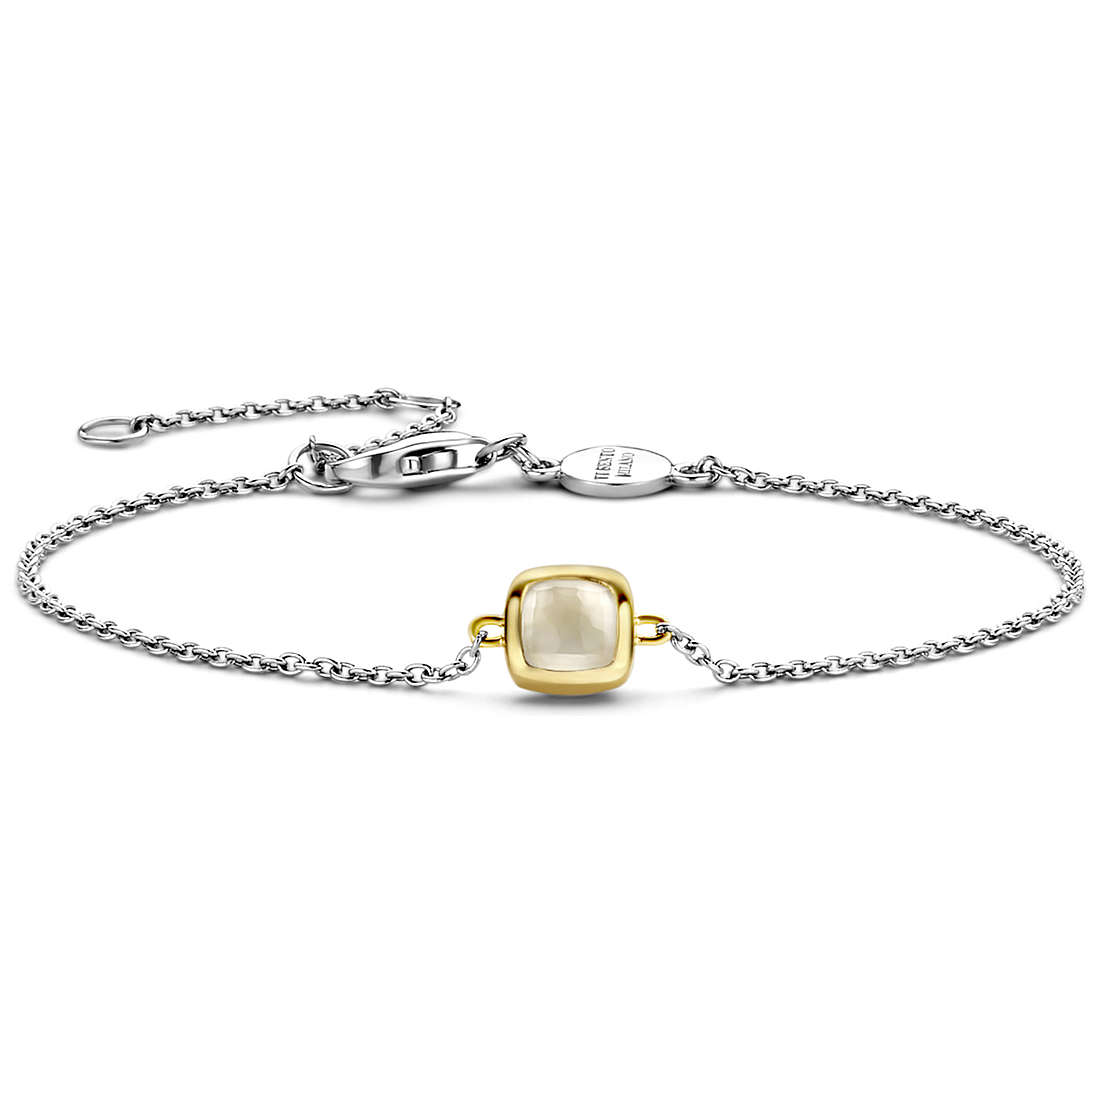 TI SENTO MILANO bracelet woman Bracelet with 925 Silver Charms/Beads jewel 2994MW